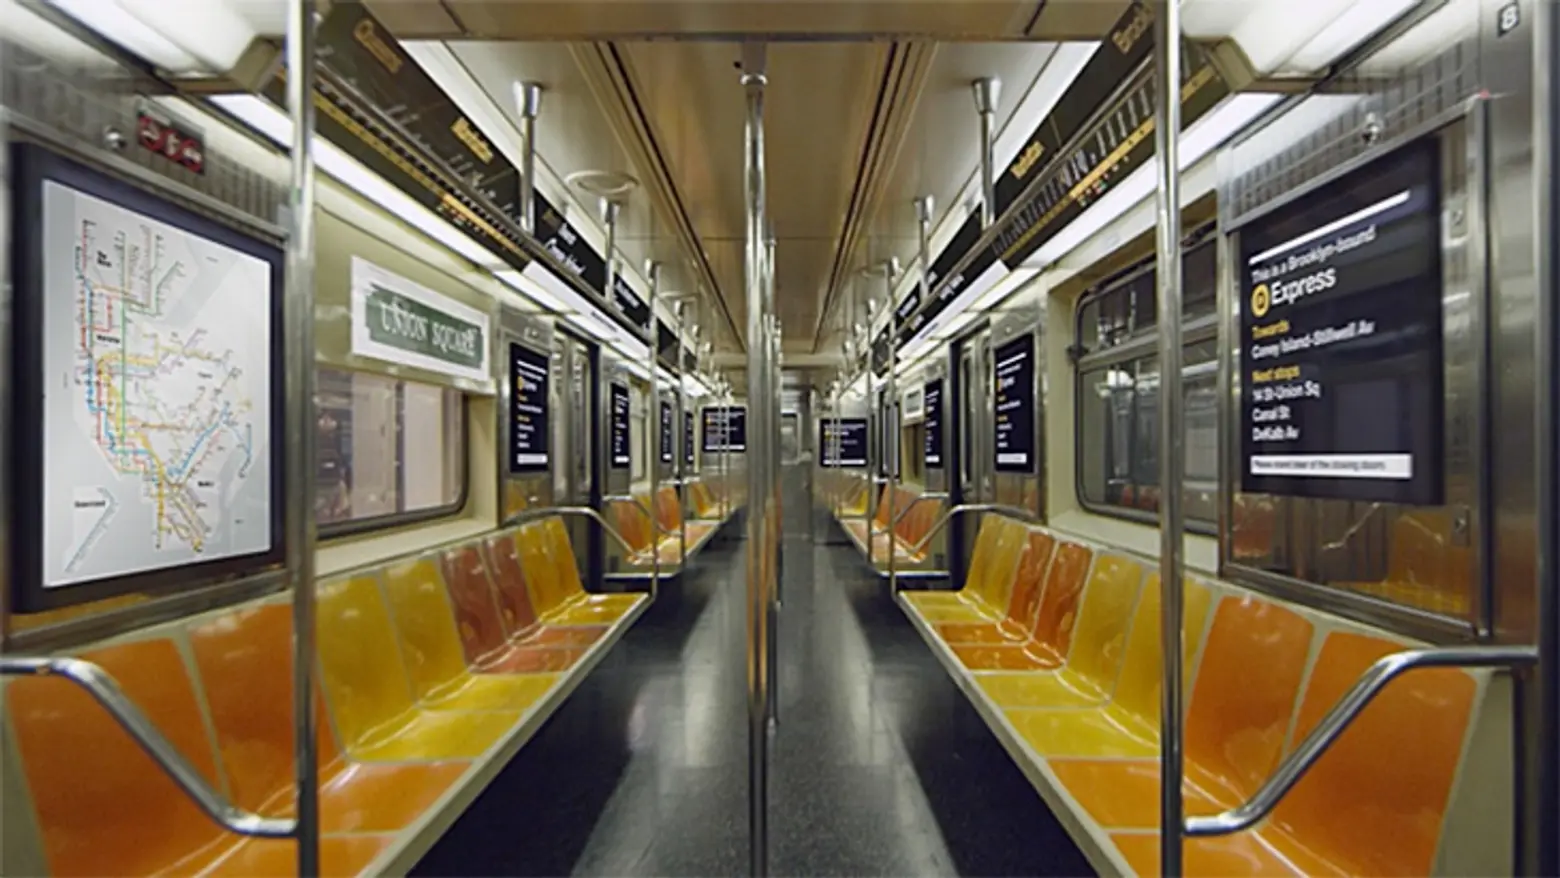 MTA bringing 40,000+ digital video ad screens to subway cars and stations